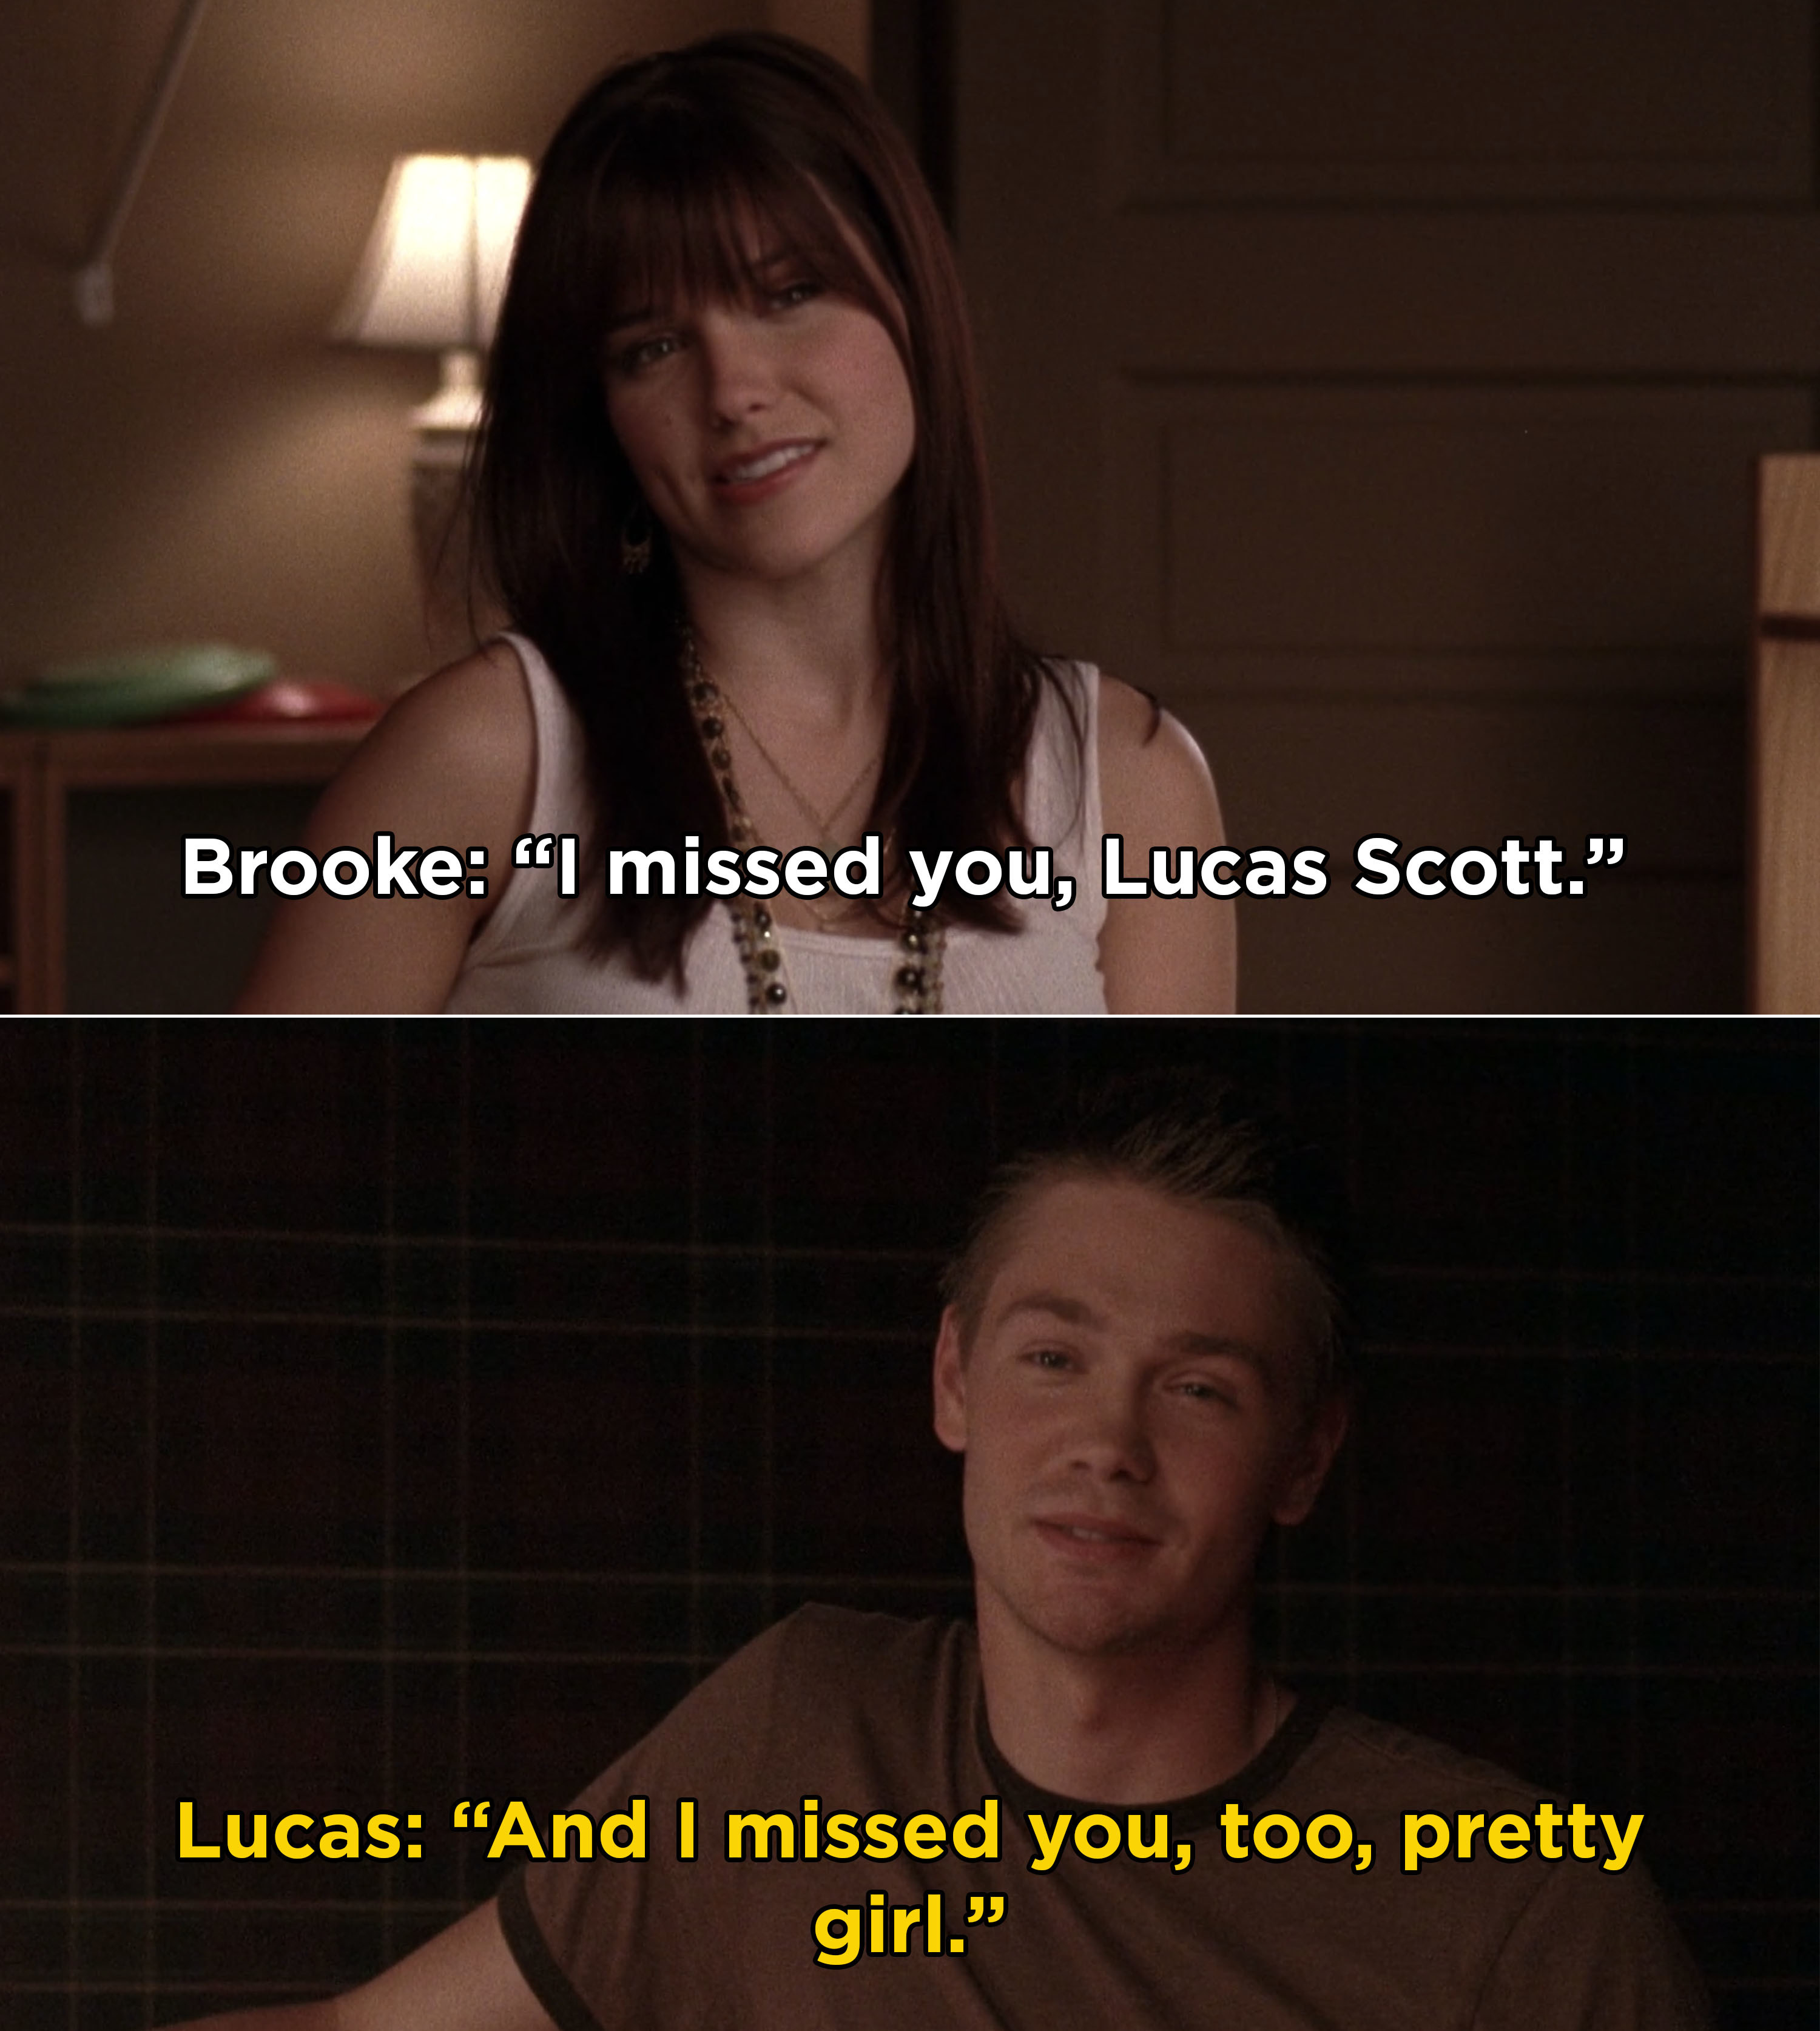 布鲁克告诉卢卡斯,她想念他和卢卡斯回应,“我想念你,也非常girl"